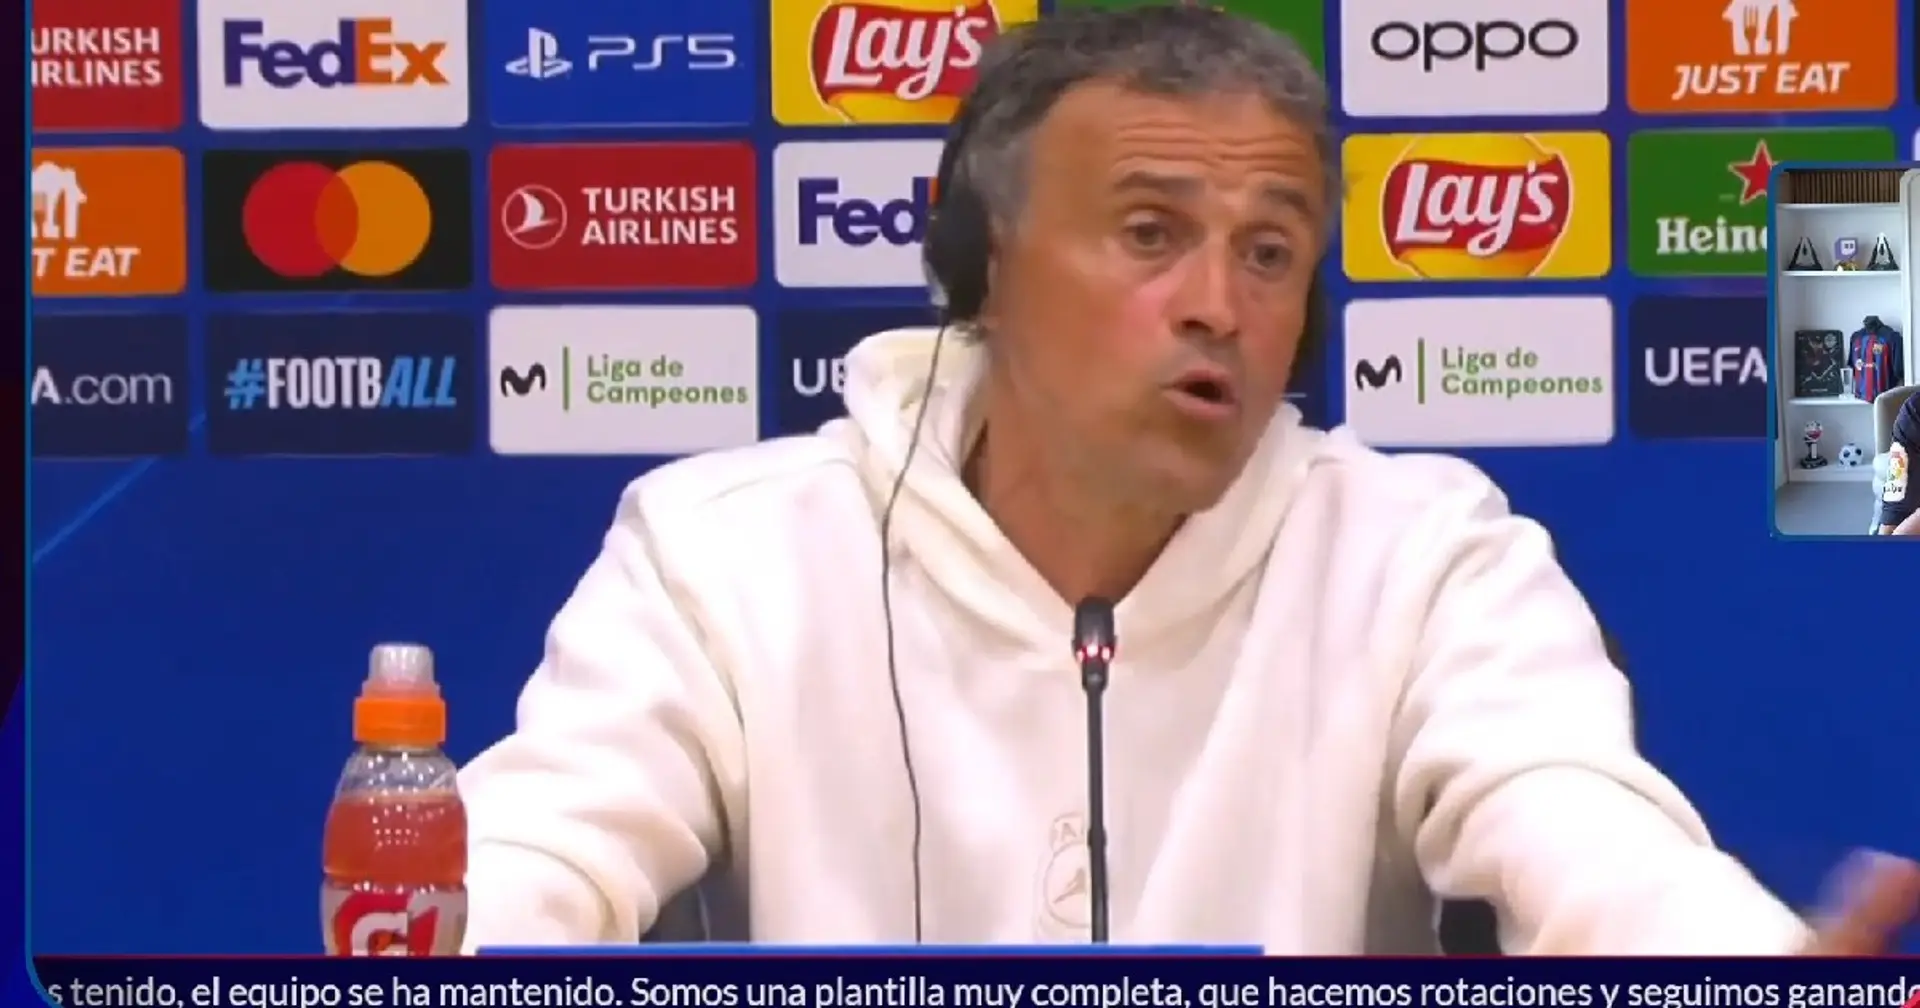 Luis Enrique fait allusion à sa tactique et révèle le moment exact où le PSG fera pression sur le Barça